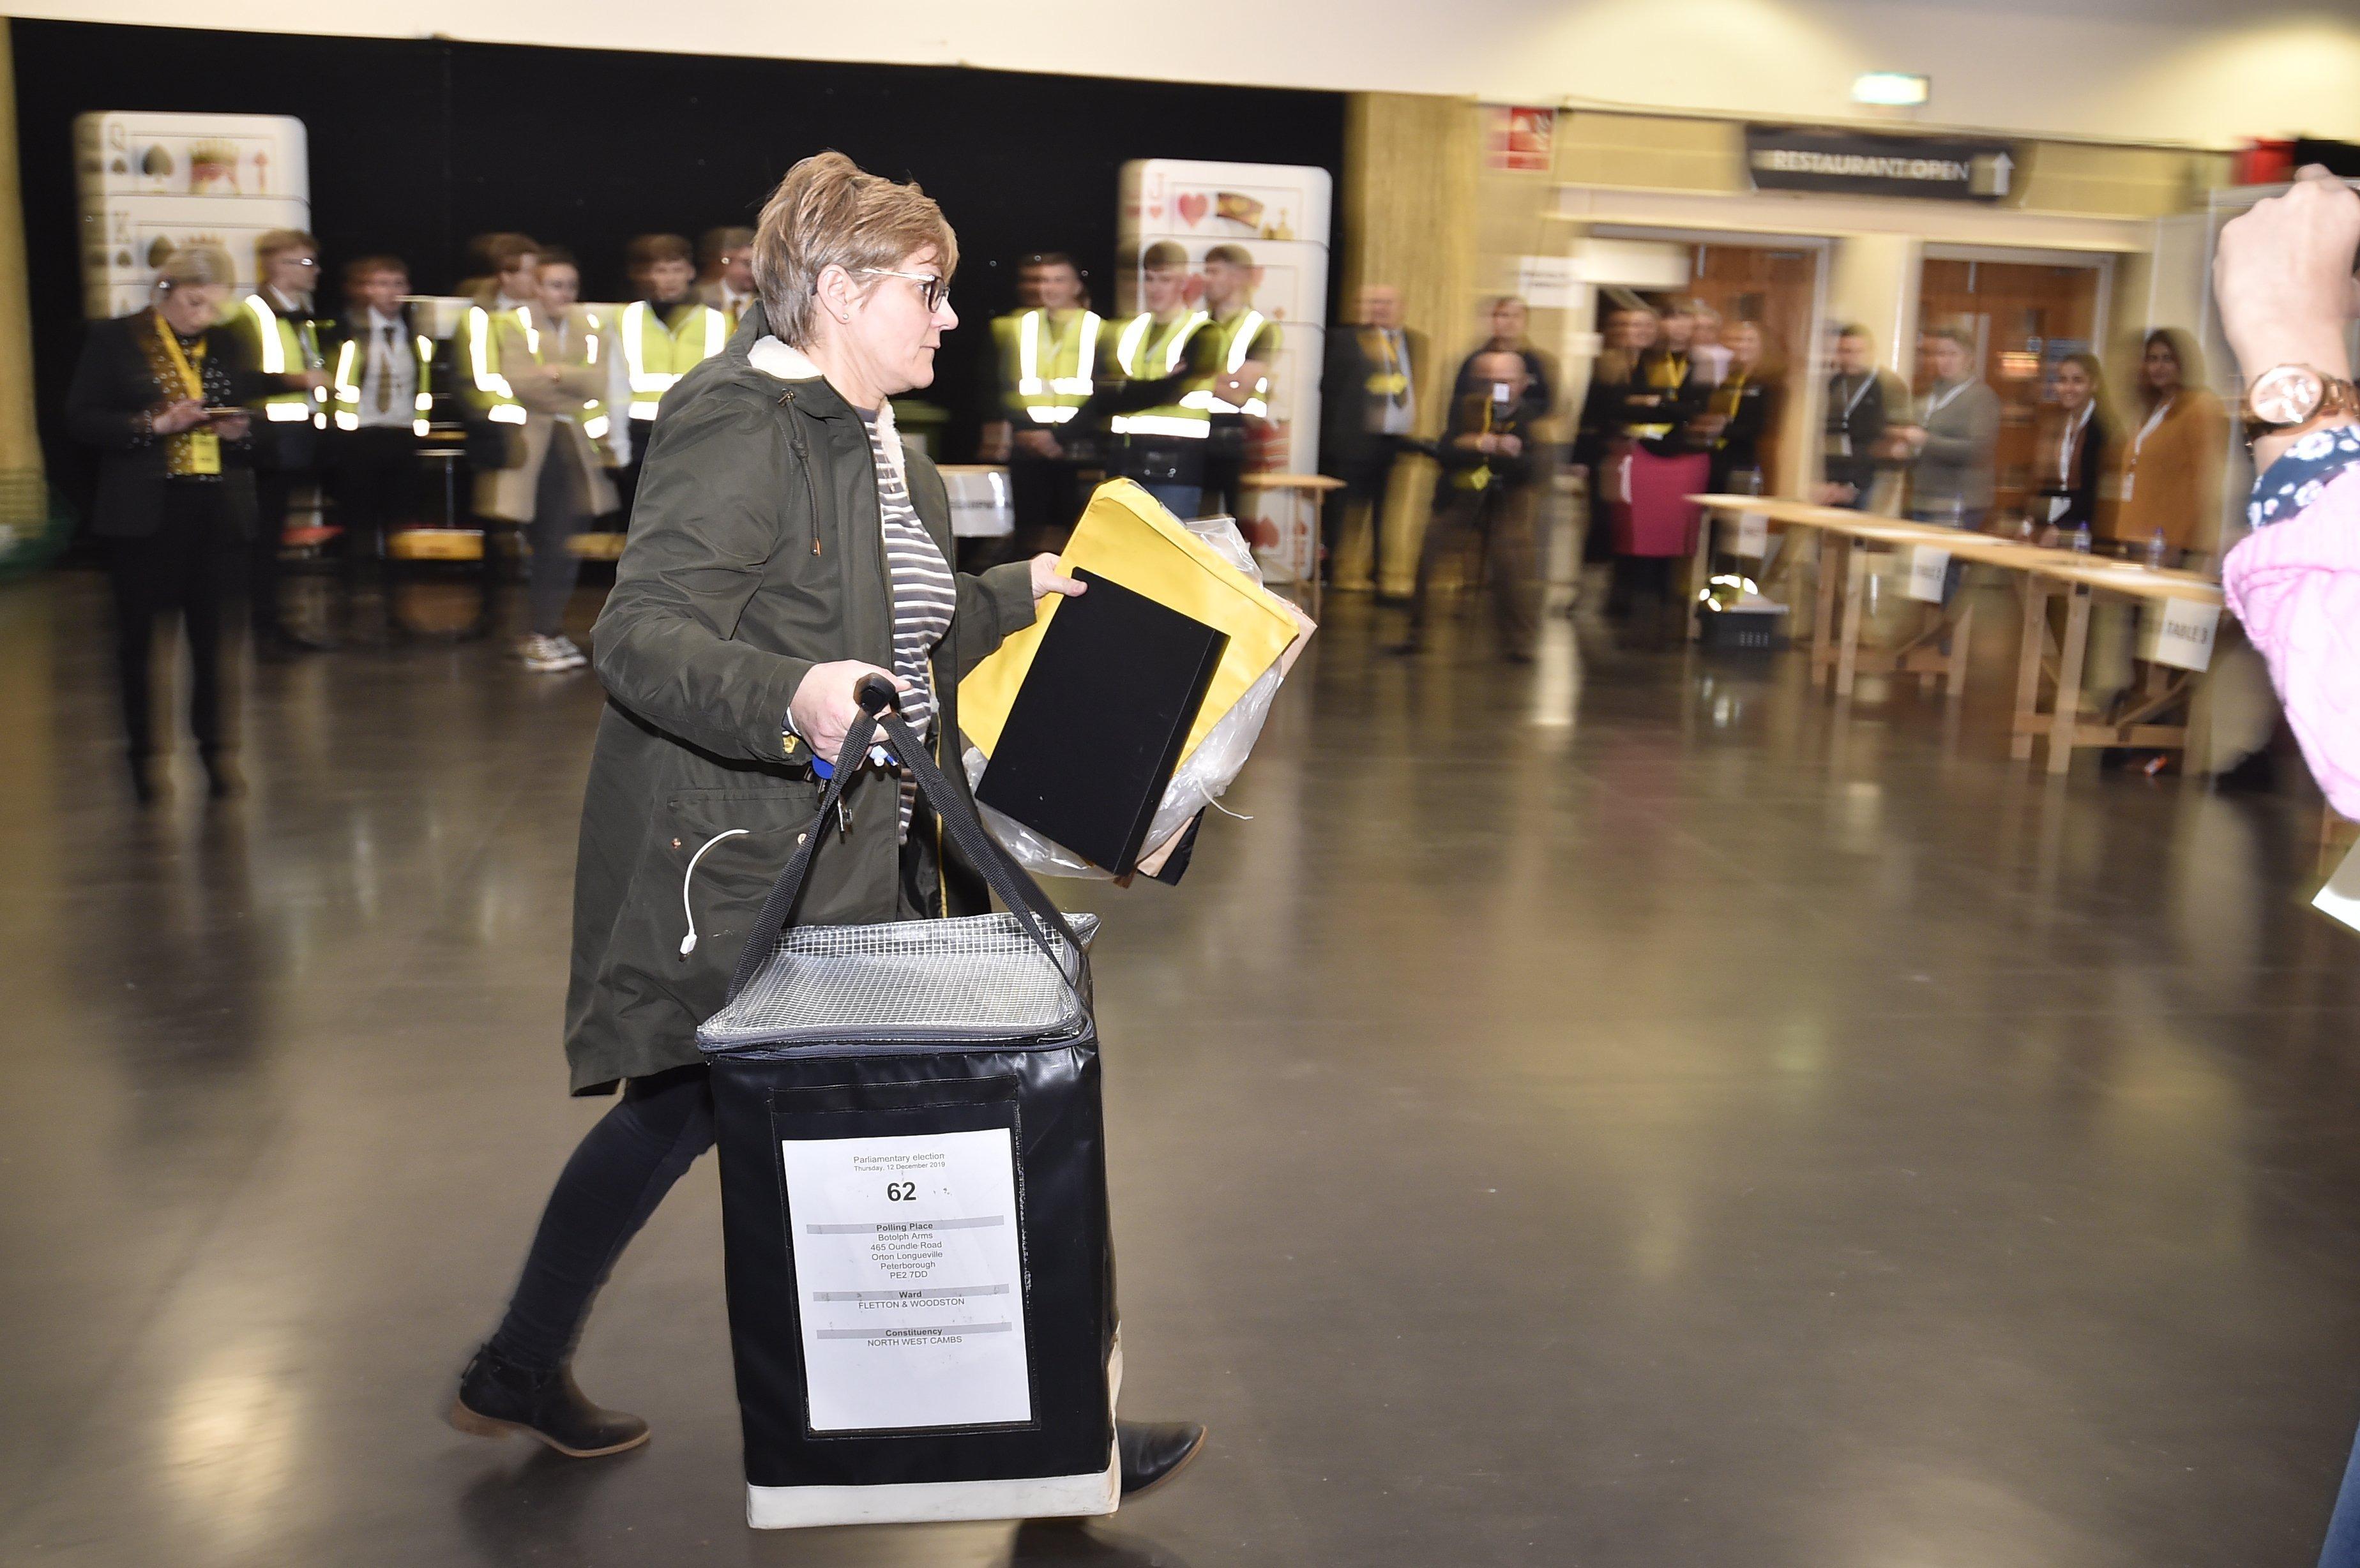 The first ballot box arrives